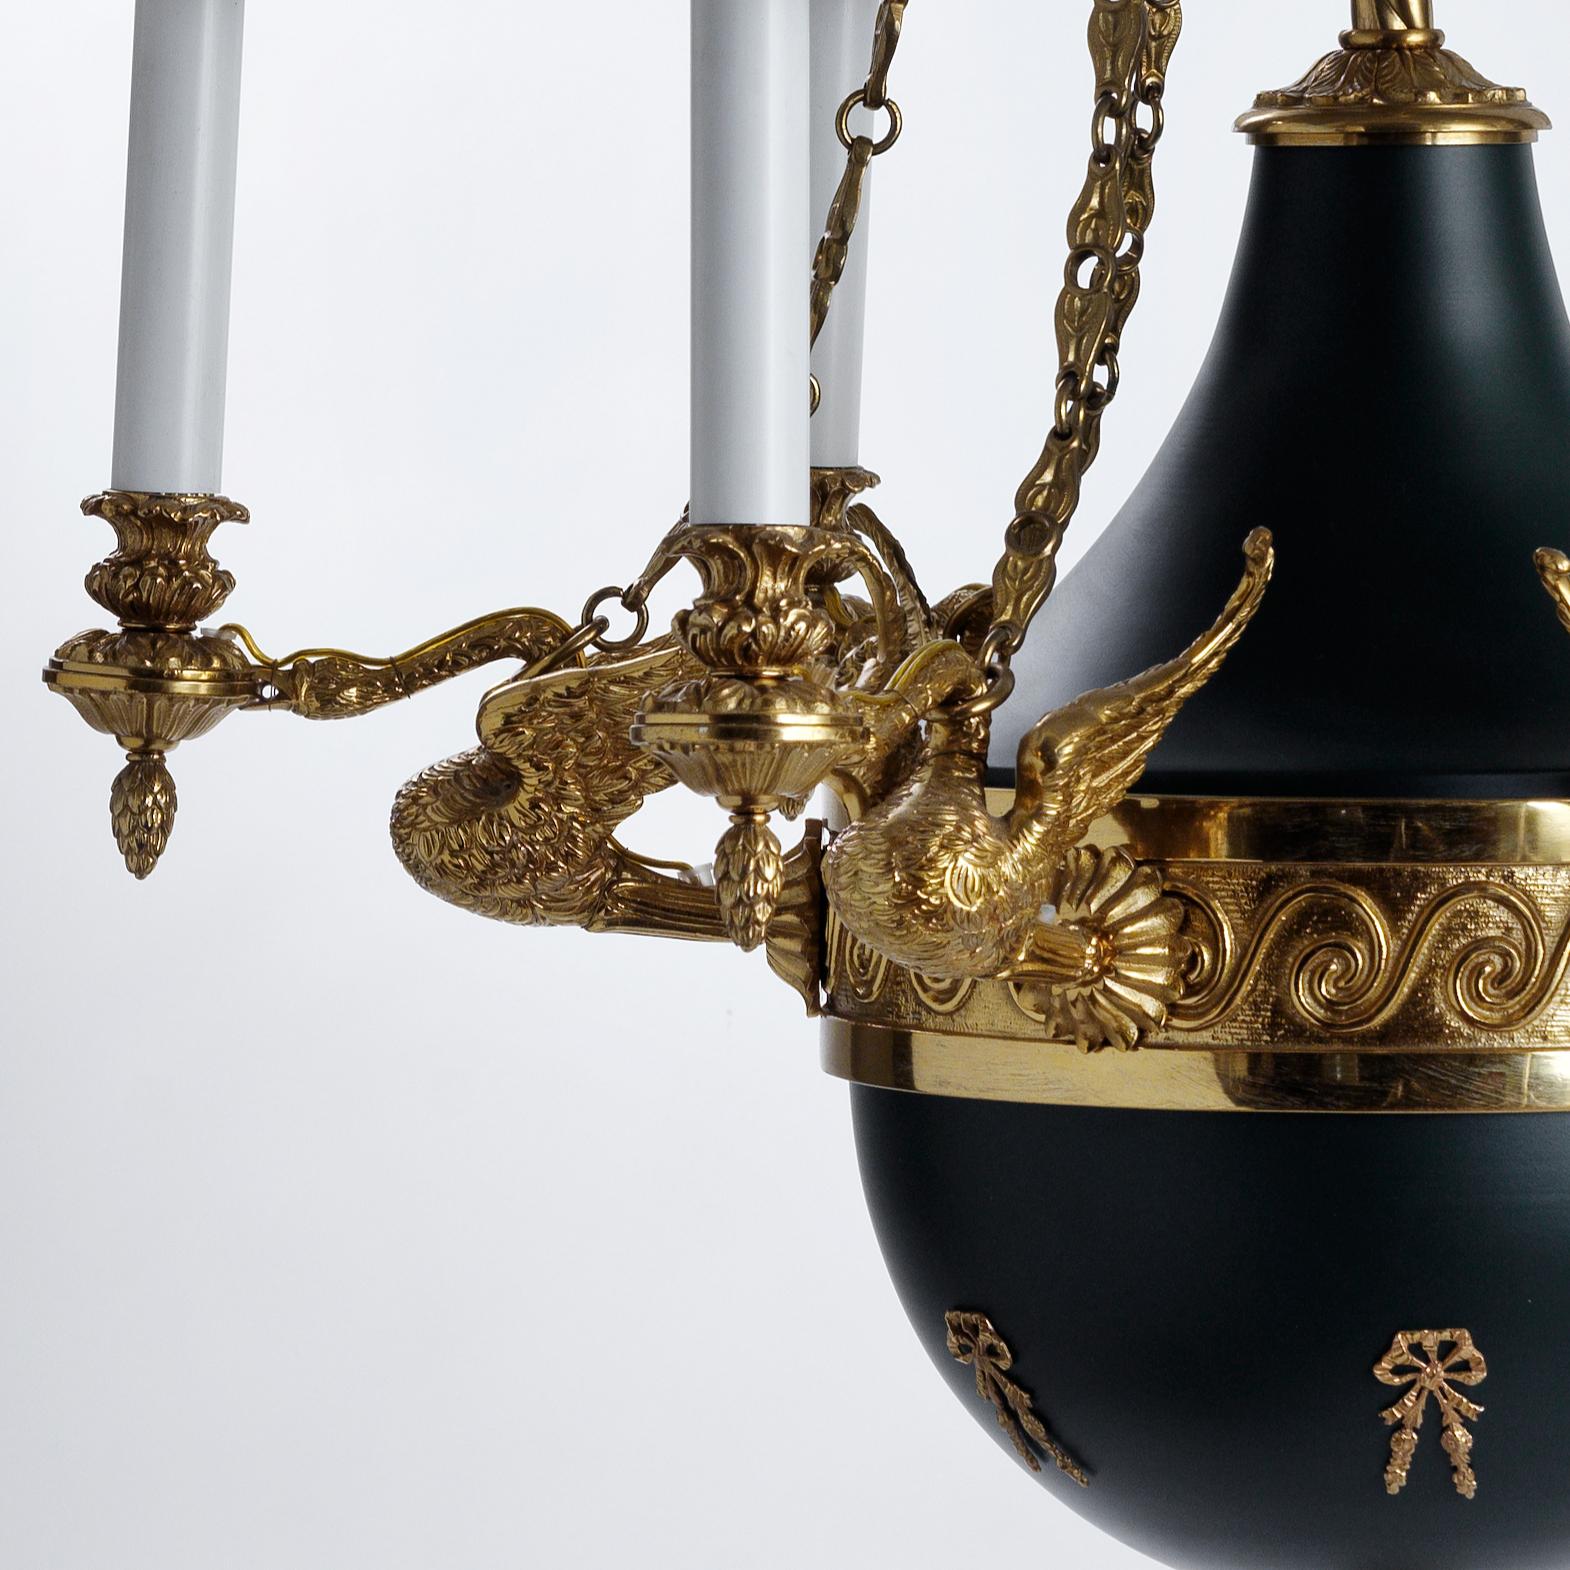 Ce lustre de style Empire français en bronze doré et émail de Gherardo Degli Albizzi présente des détails ciselés à la main de la meilleure qualité.
Les couronnes supérieures sont caractérisées par une riche décoration végétale avec des feuilles